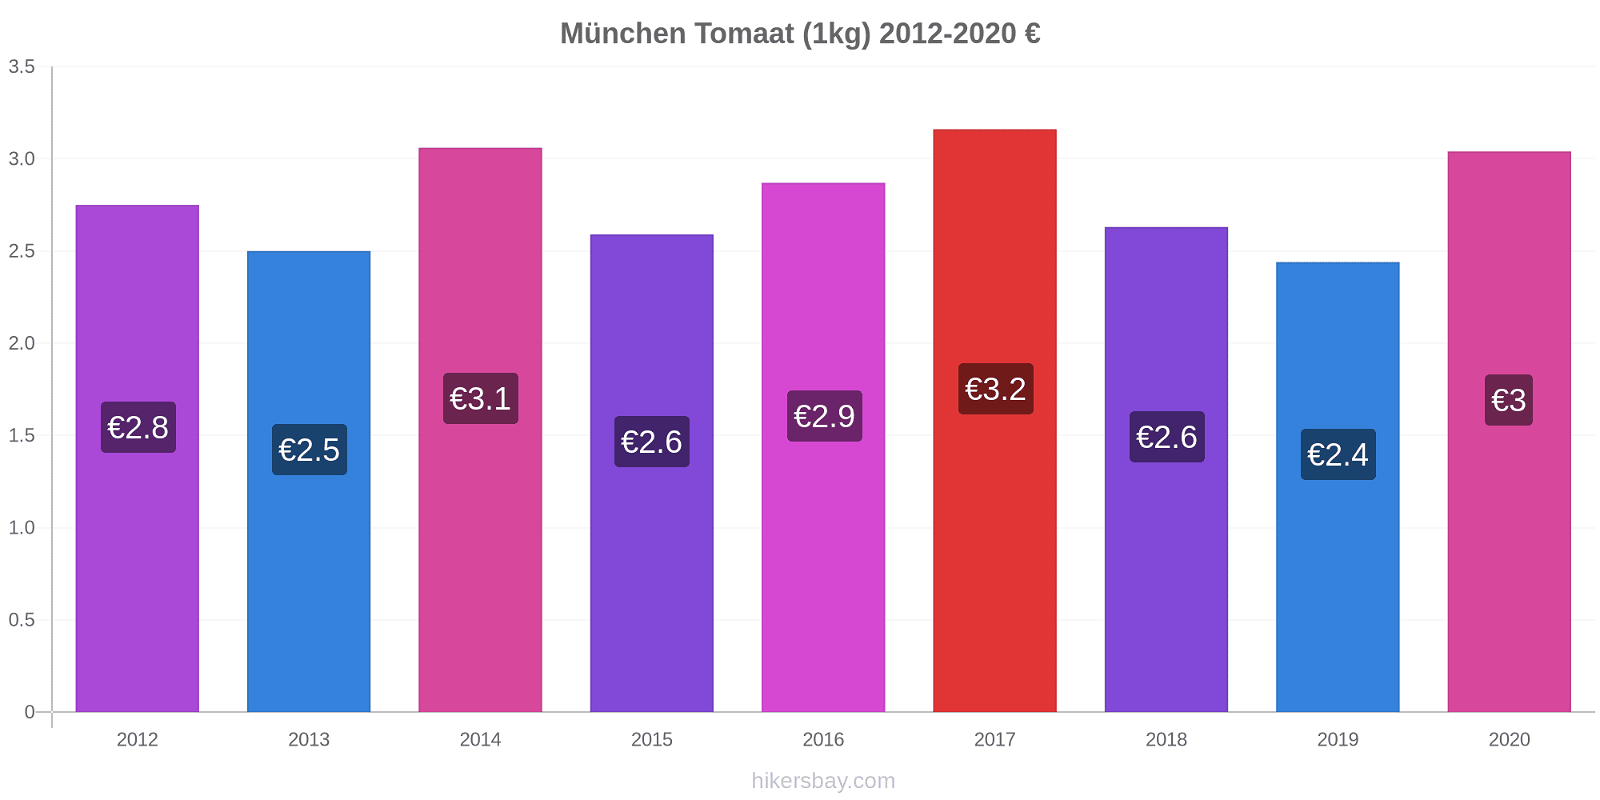 München prijswijzigingen Tomaat (1kg) hikersbay.com